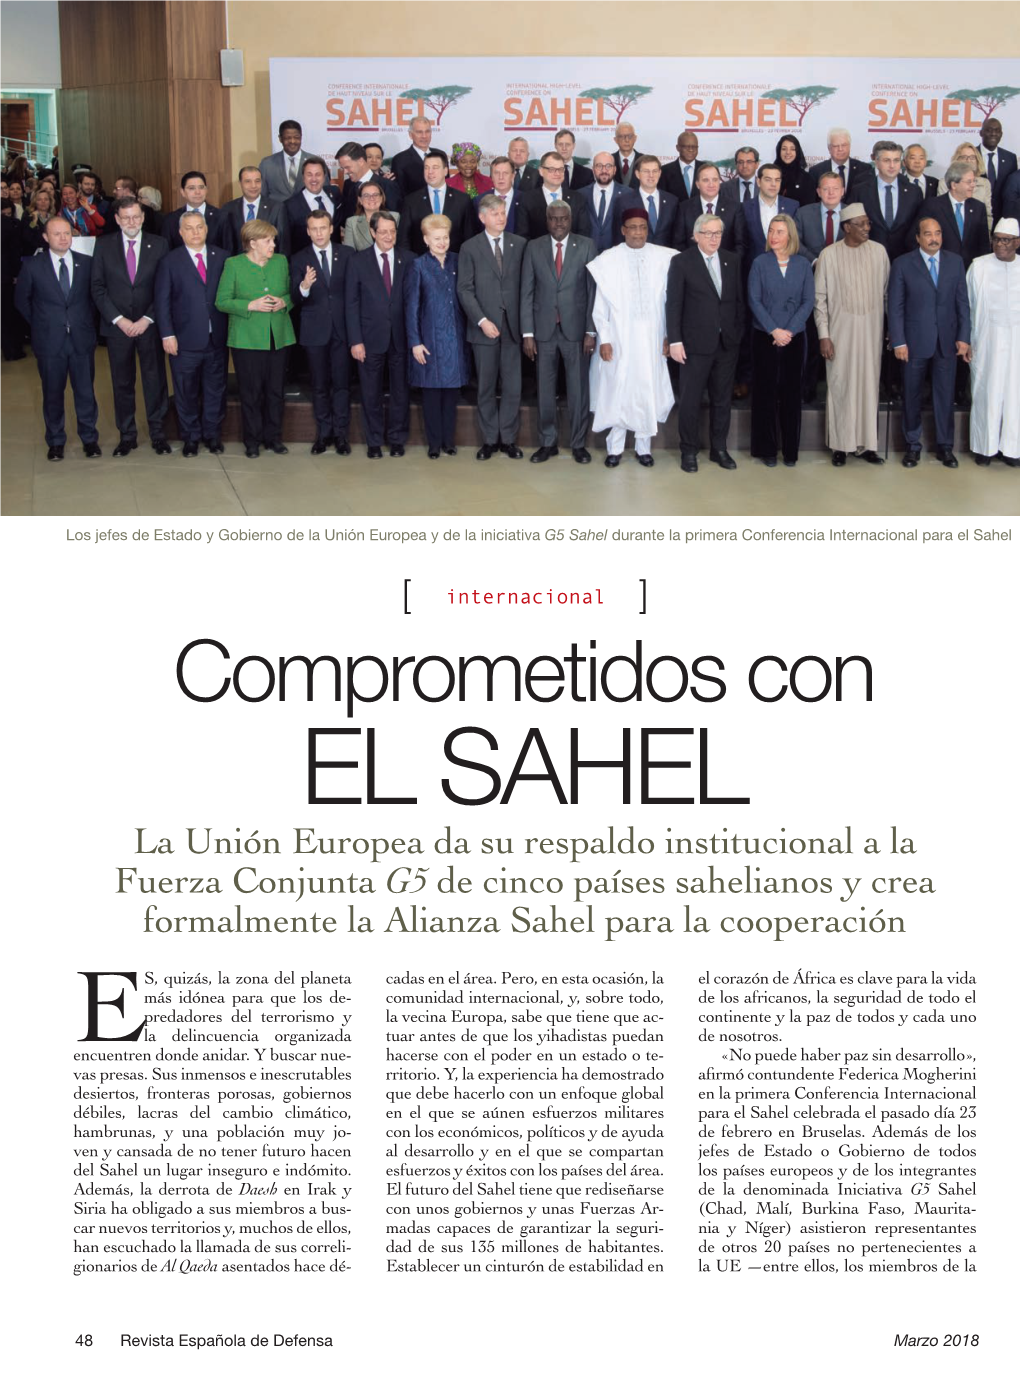 El Sahel Celebrada En Bruselas El Pasado 23 De Febrero